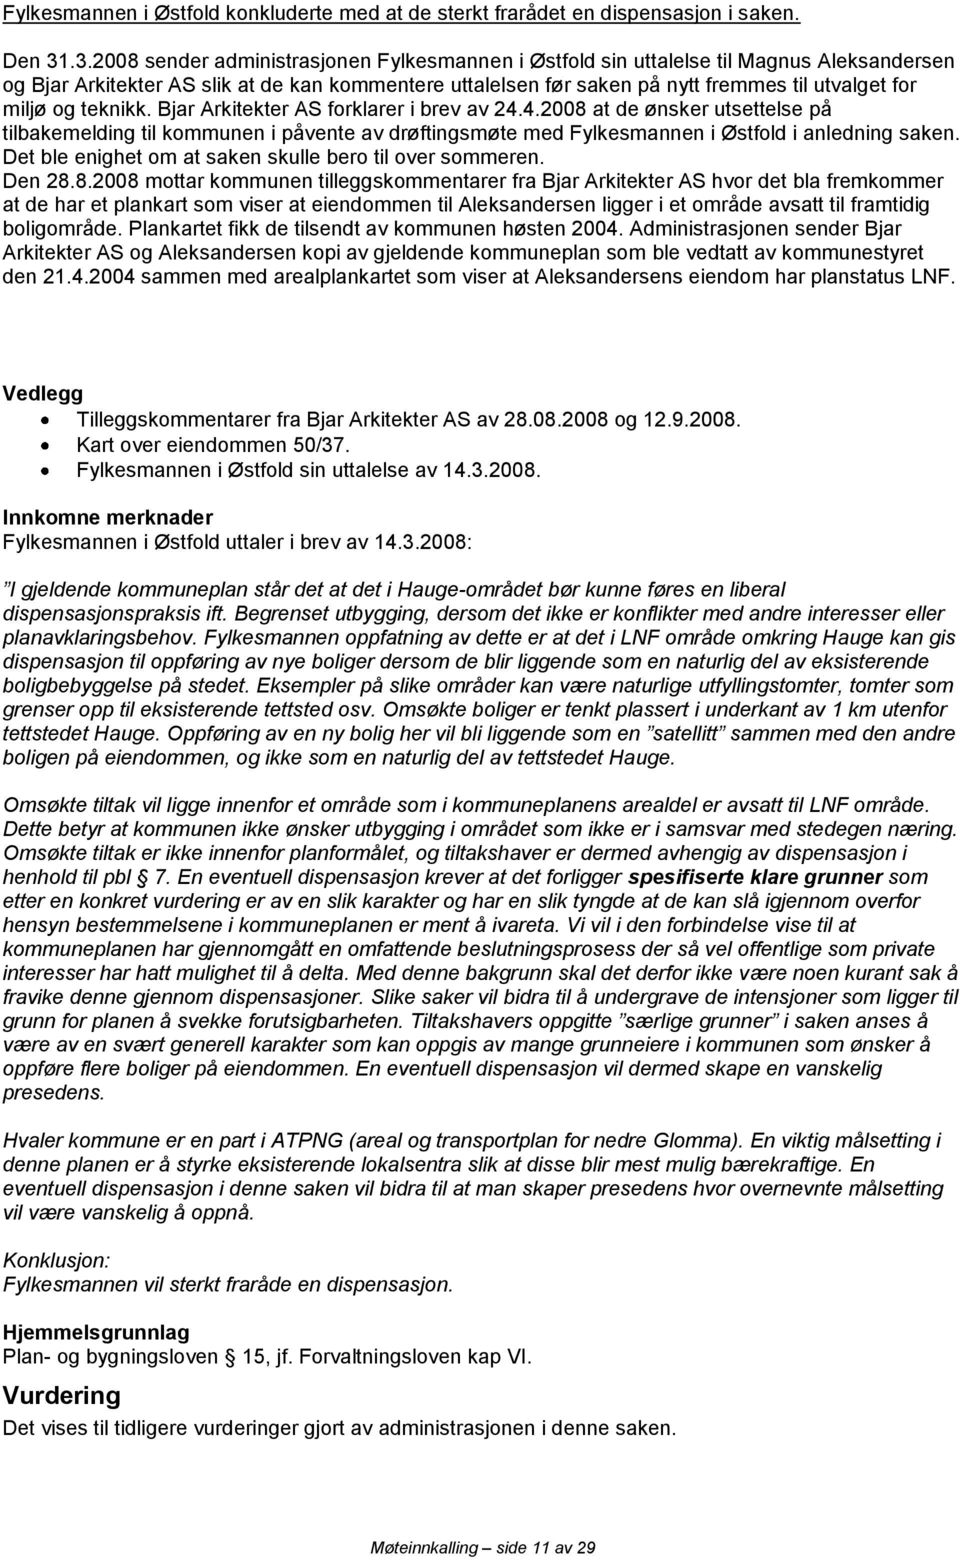 miljø og teknikk. Bjar Arkitekter AS forklarer i brev av 24.4.2008 at de ønsker utsettelse på tilbakemelding til kommunen i påvente av drøftingsmøte med Fylkesmannen i Østfold i anledning saken.